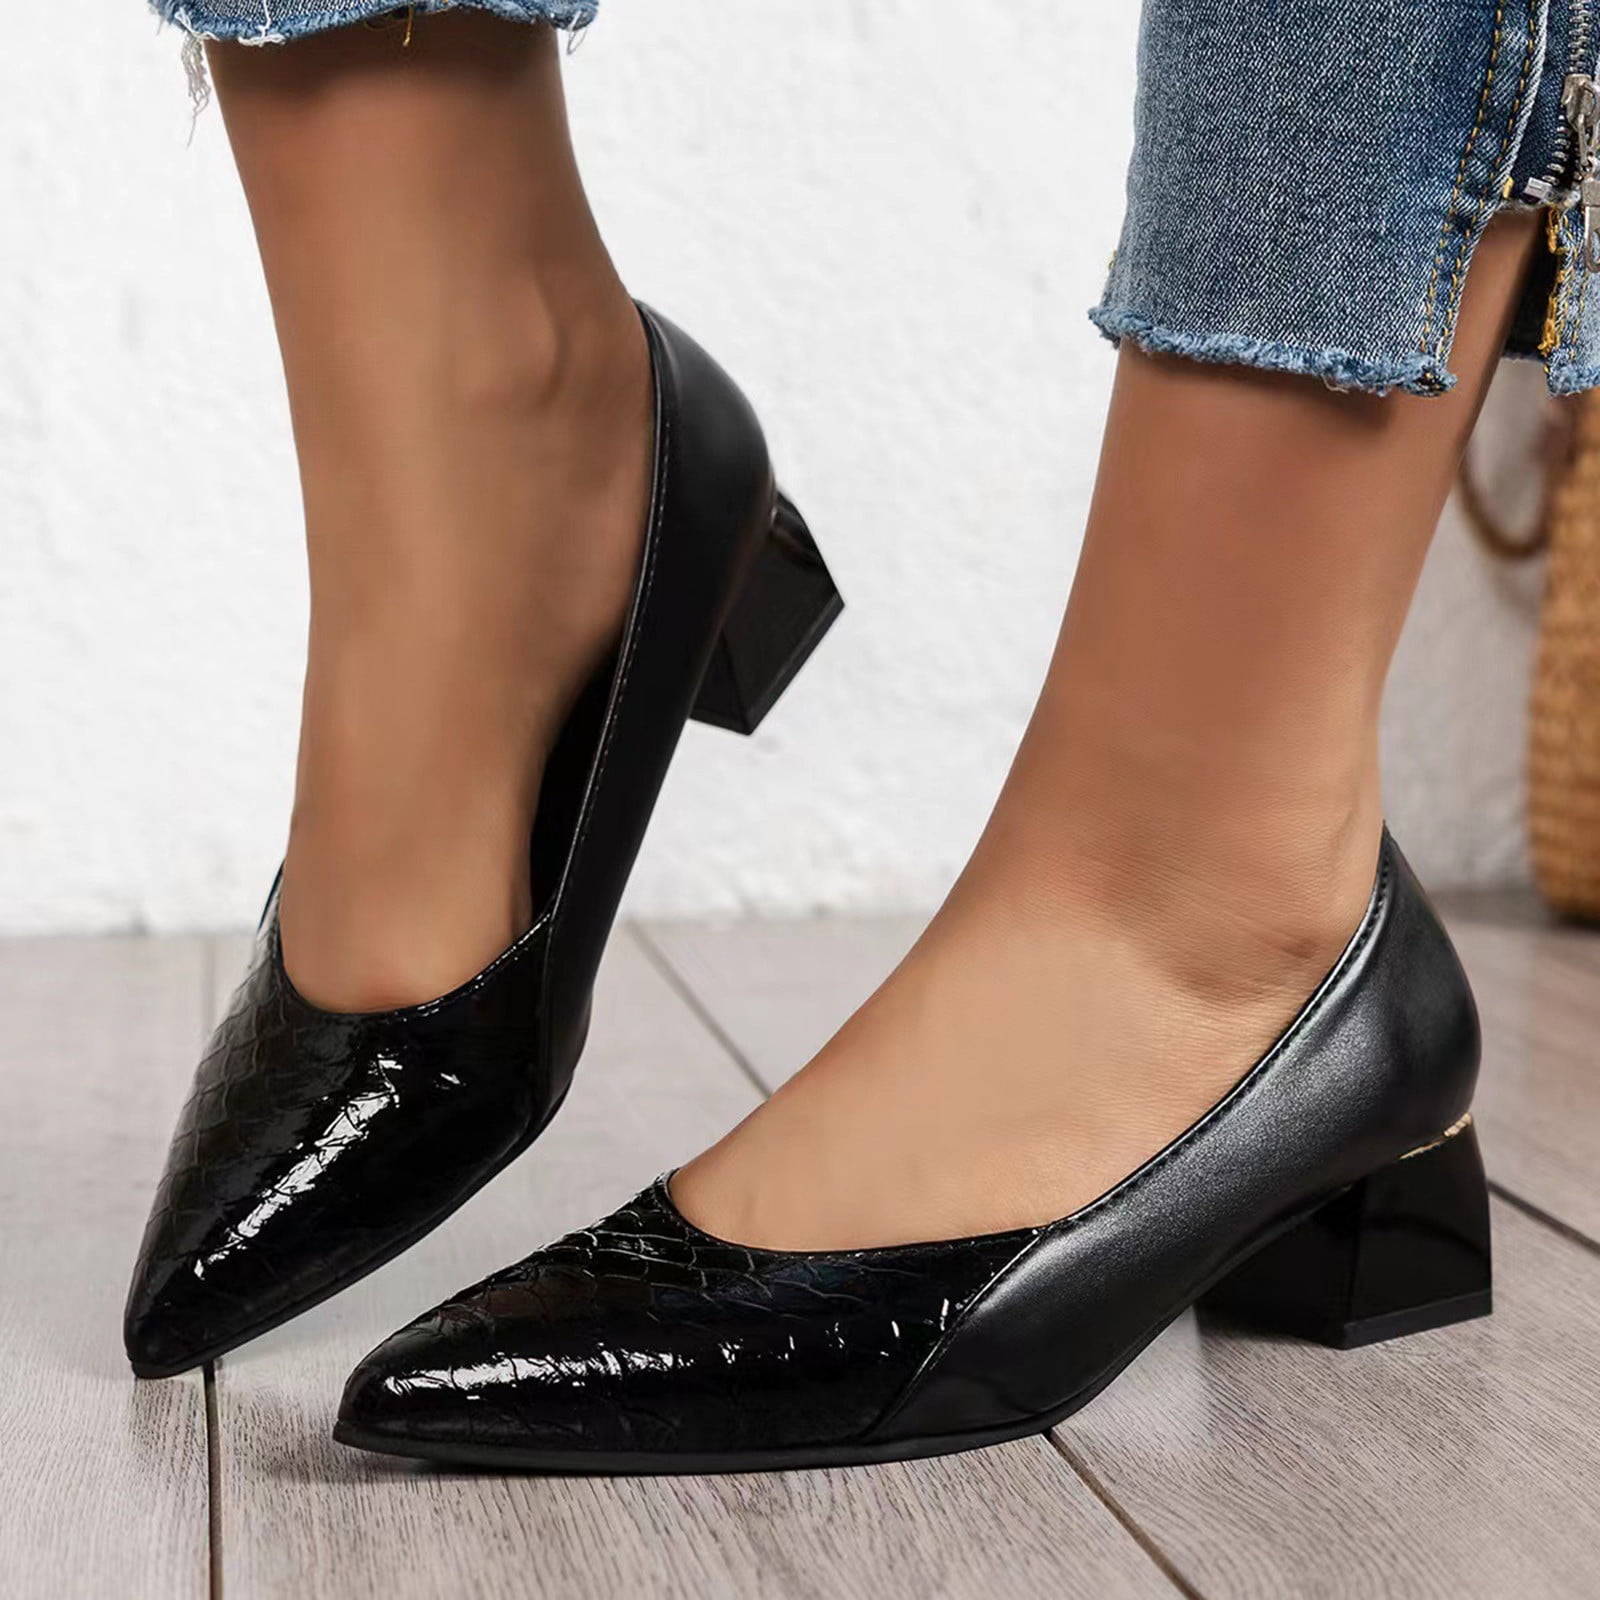 Buy Black Shoes For Women School Heels 1 Inch online | Lazada.com.ph